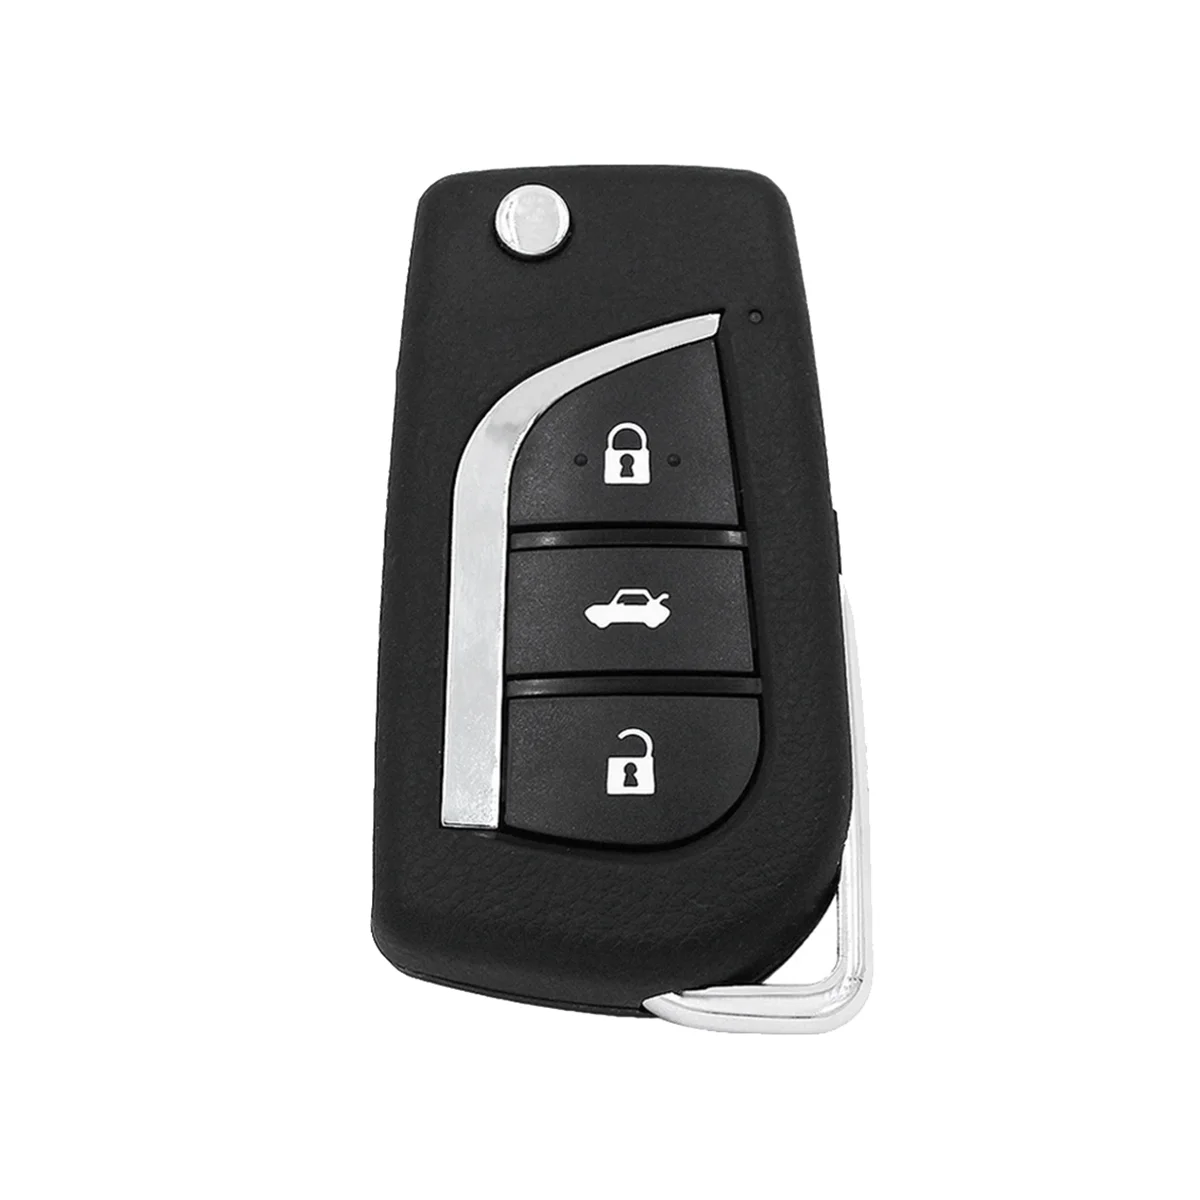 

KEYDIY B13 KD пульт дистанционного управления автомобильный ключ универсальный 3 кнопки для Toyota стиль для KD900/KD-X2 KD MINI/ URG200 программатор